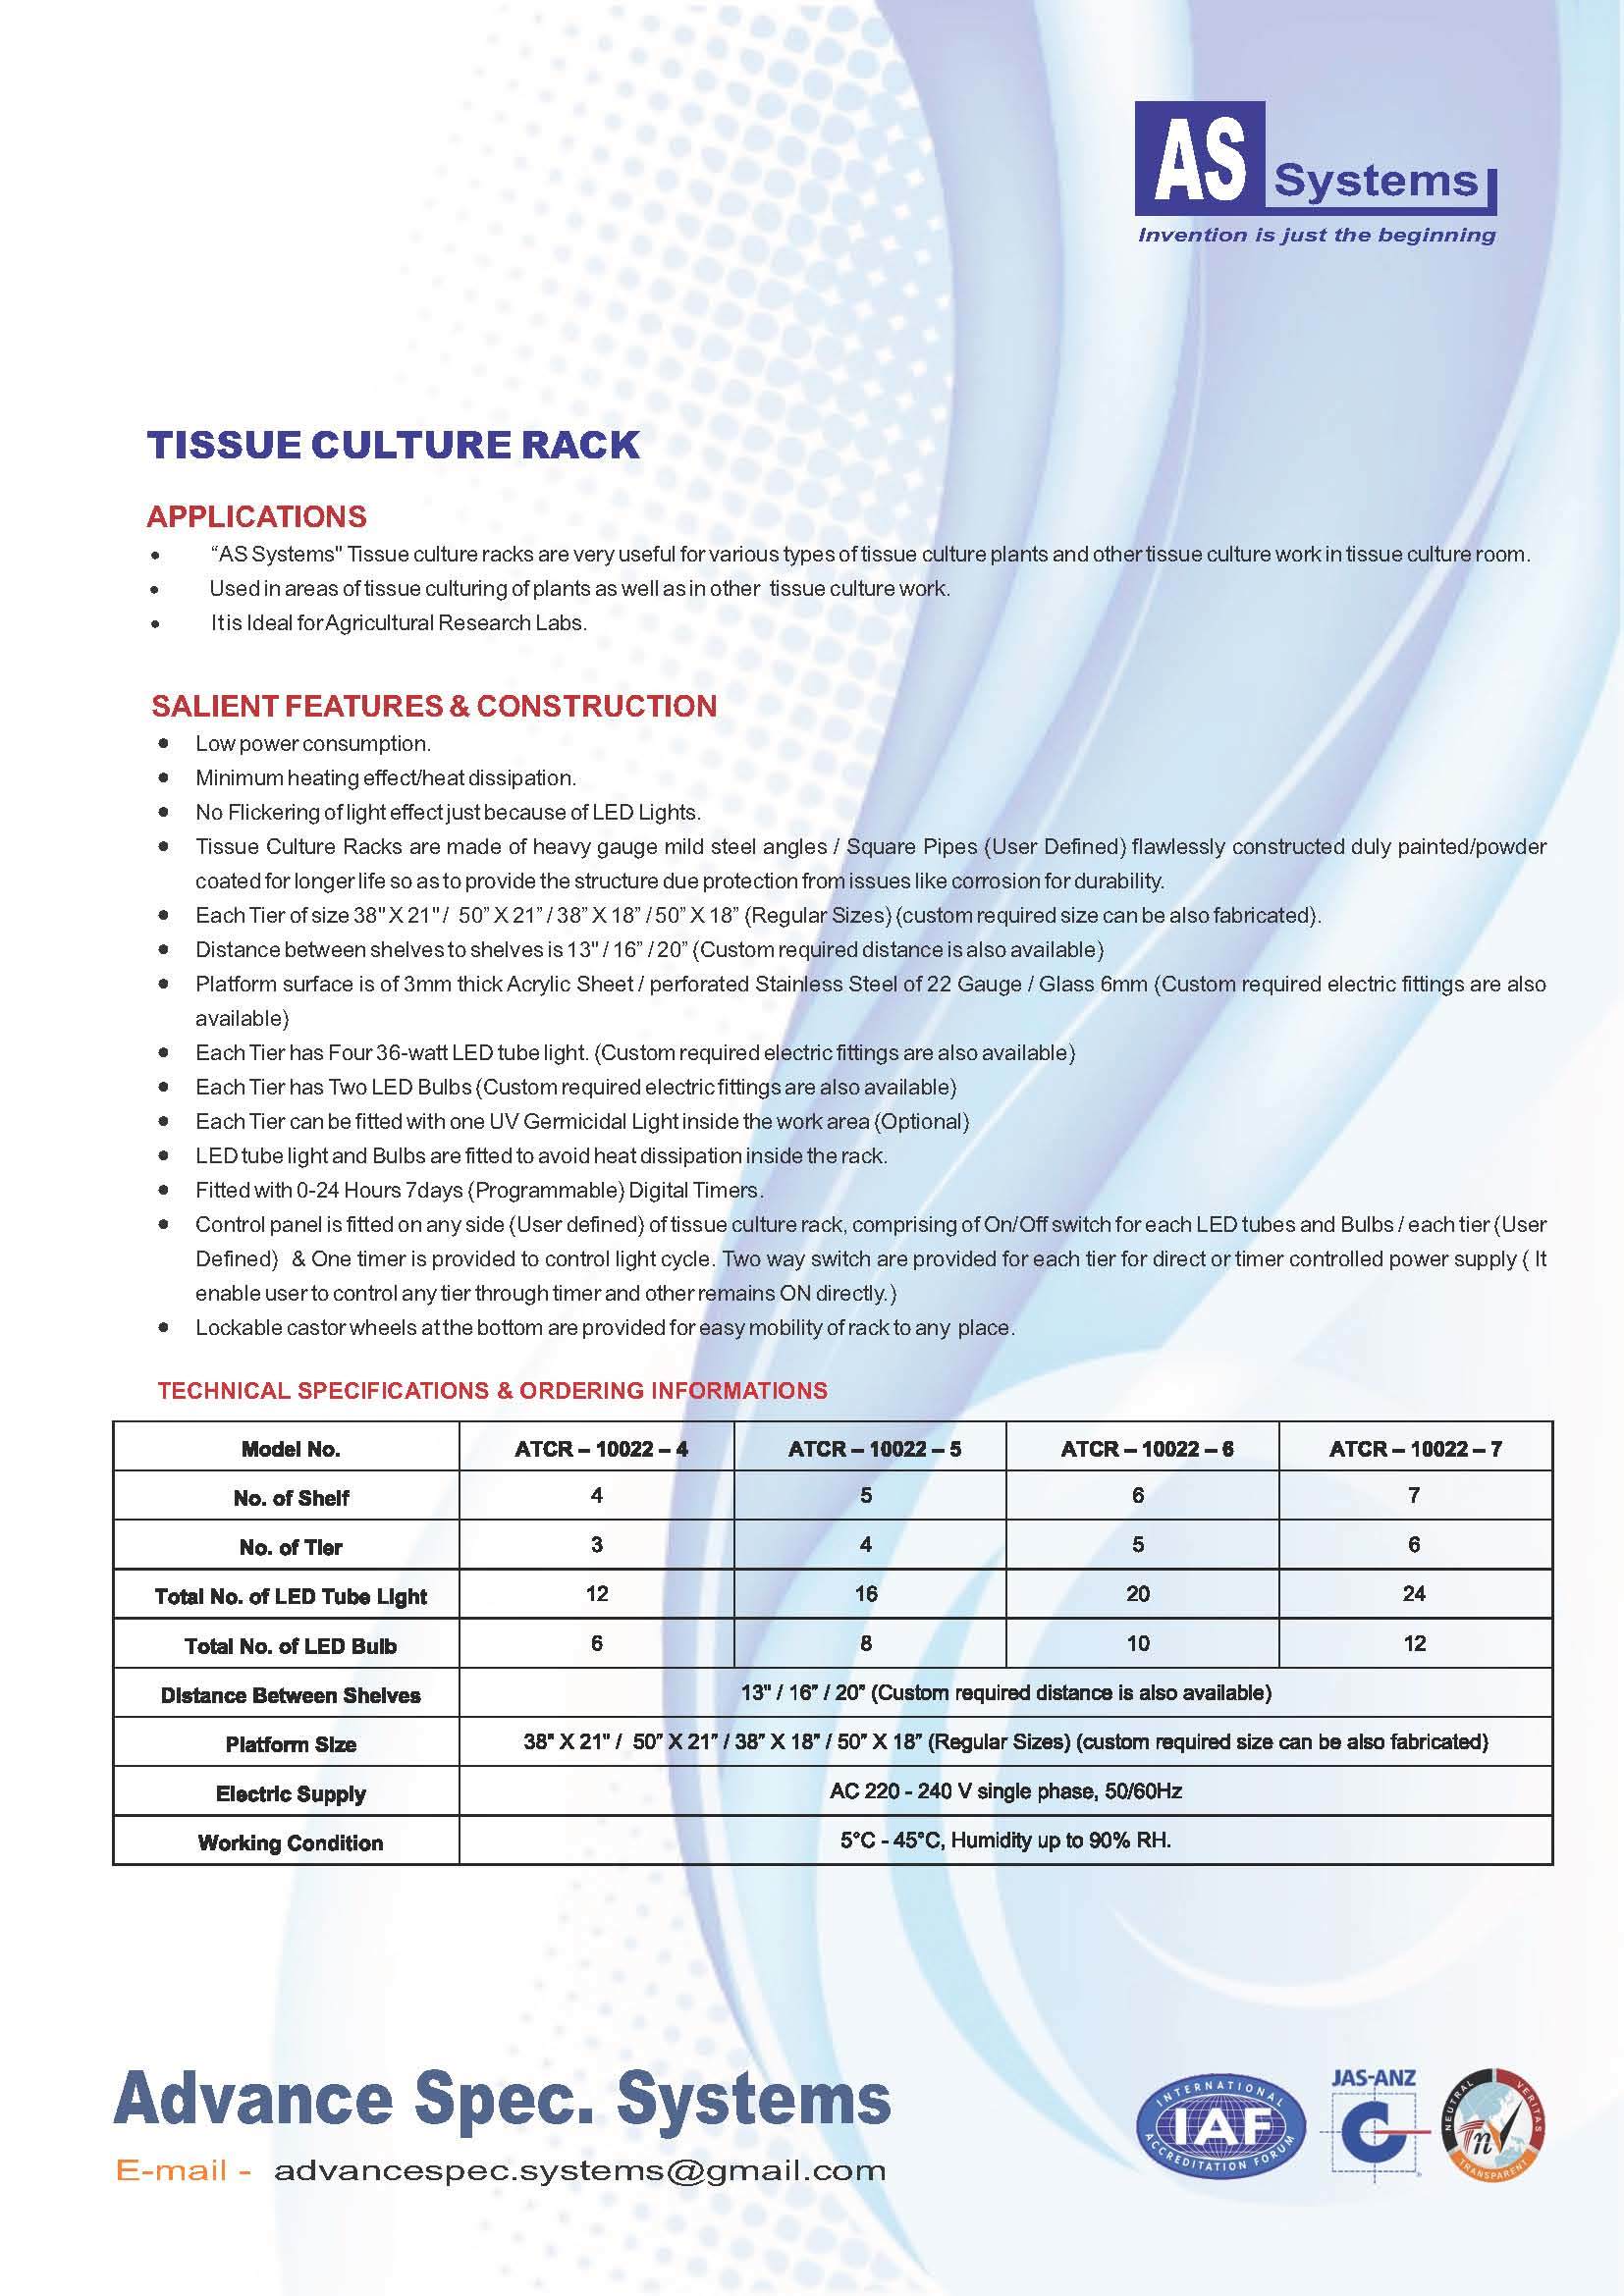 Tissue Culture Rack